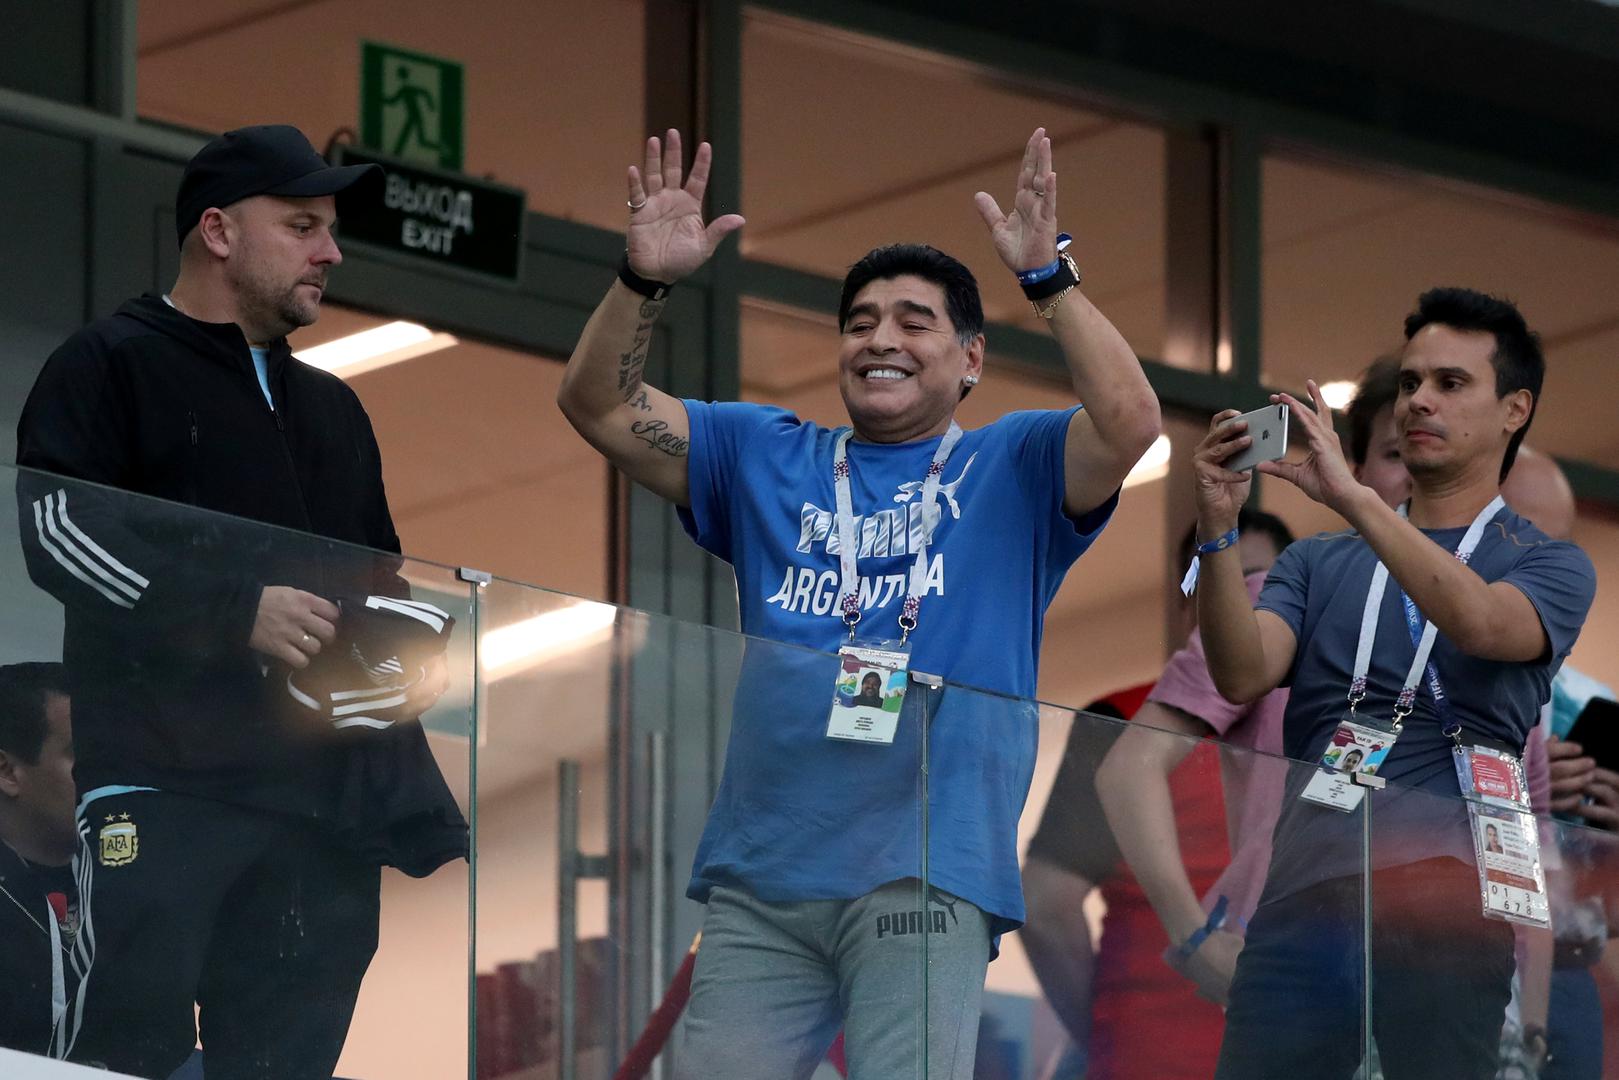 Inače, Maradona je napravio šou i u prvoj utakmici Argentine kada je pušio na stadionu, iako je to strogo zabranjeno.